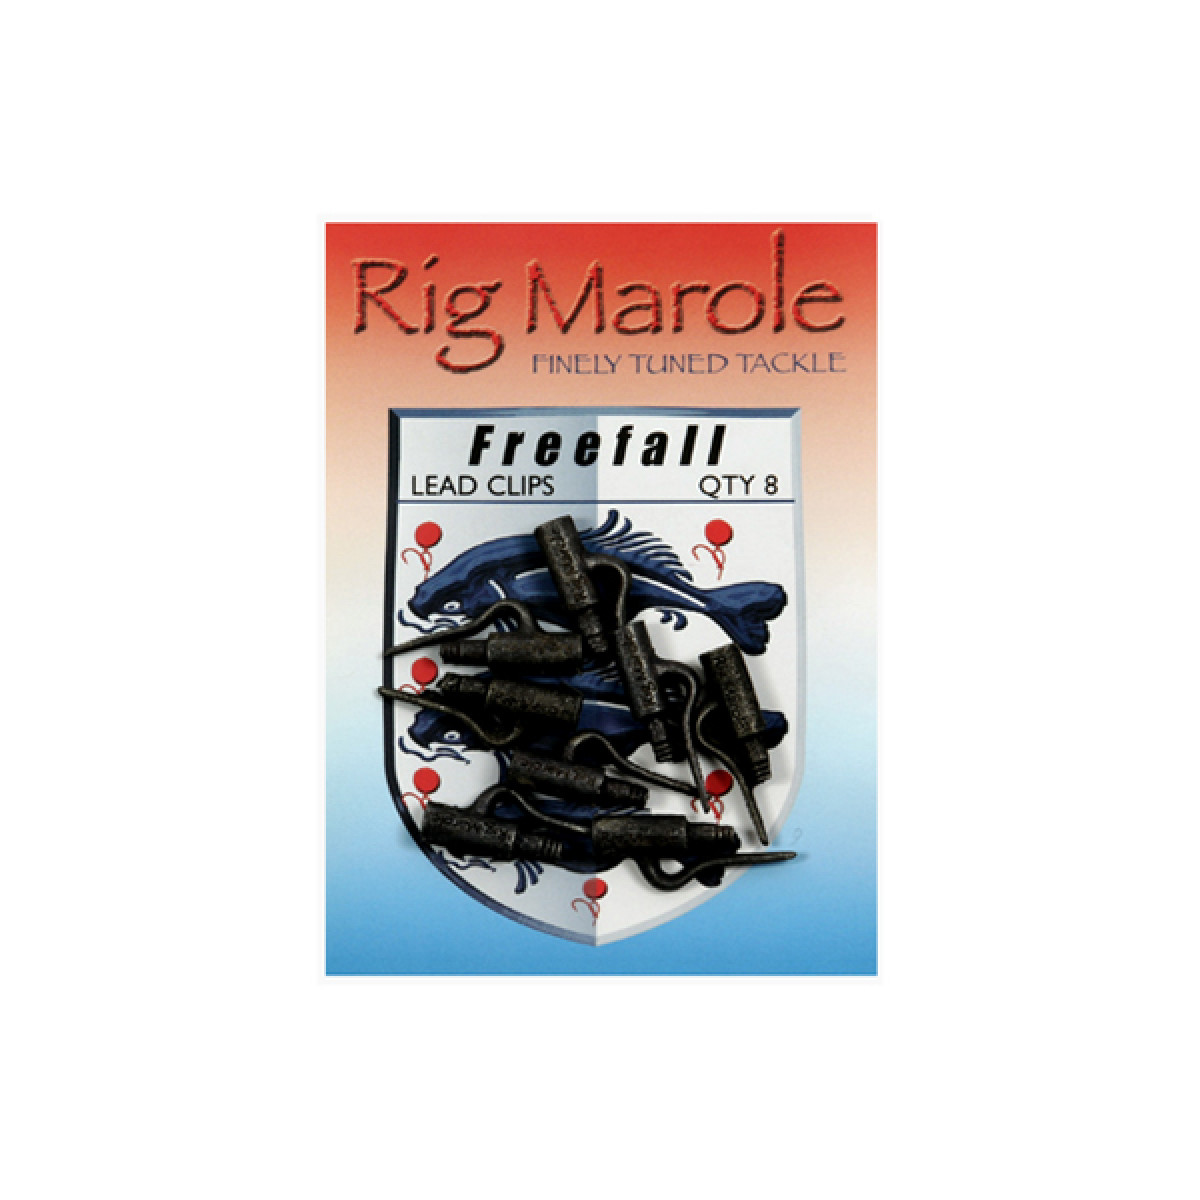 RIG MAROLE FREEFALL LEAD CLIPS